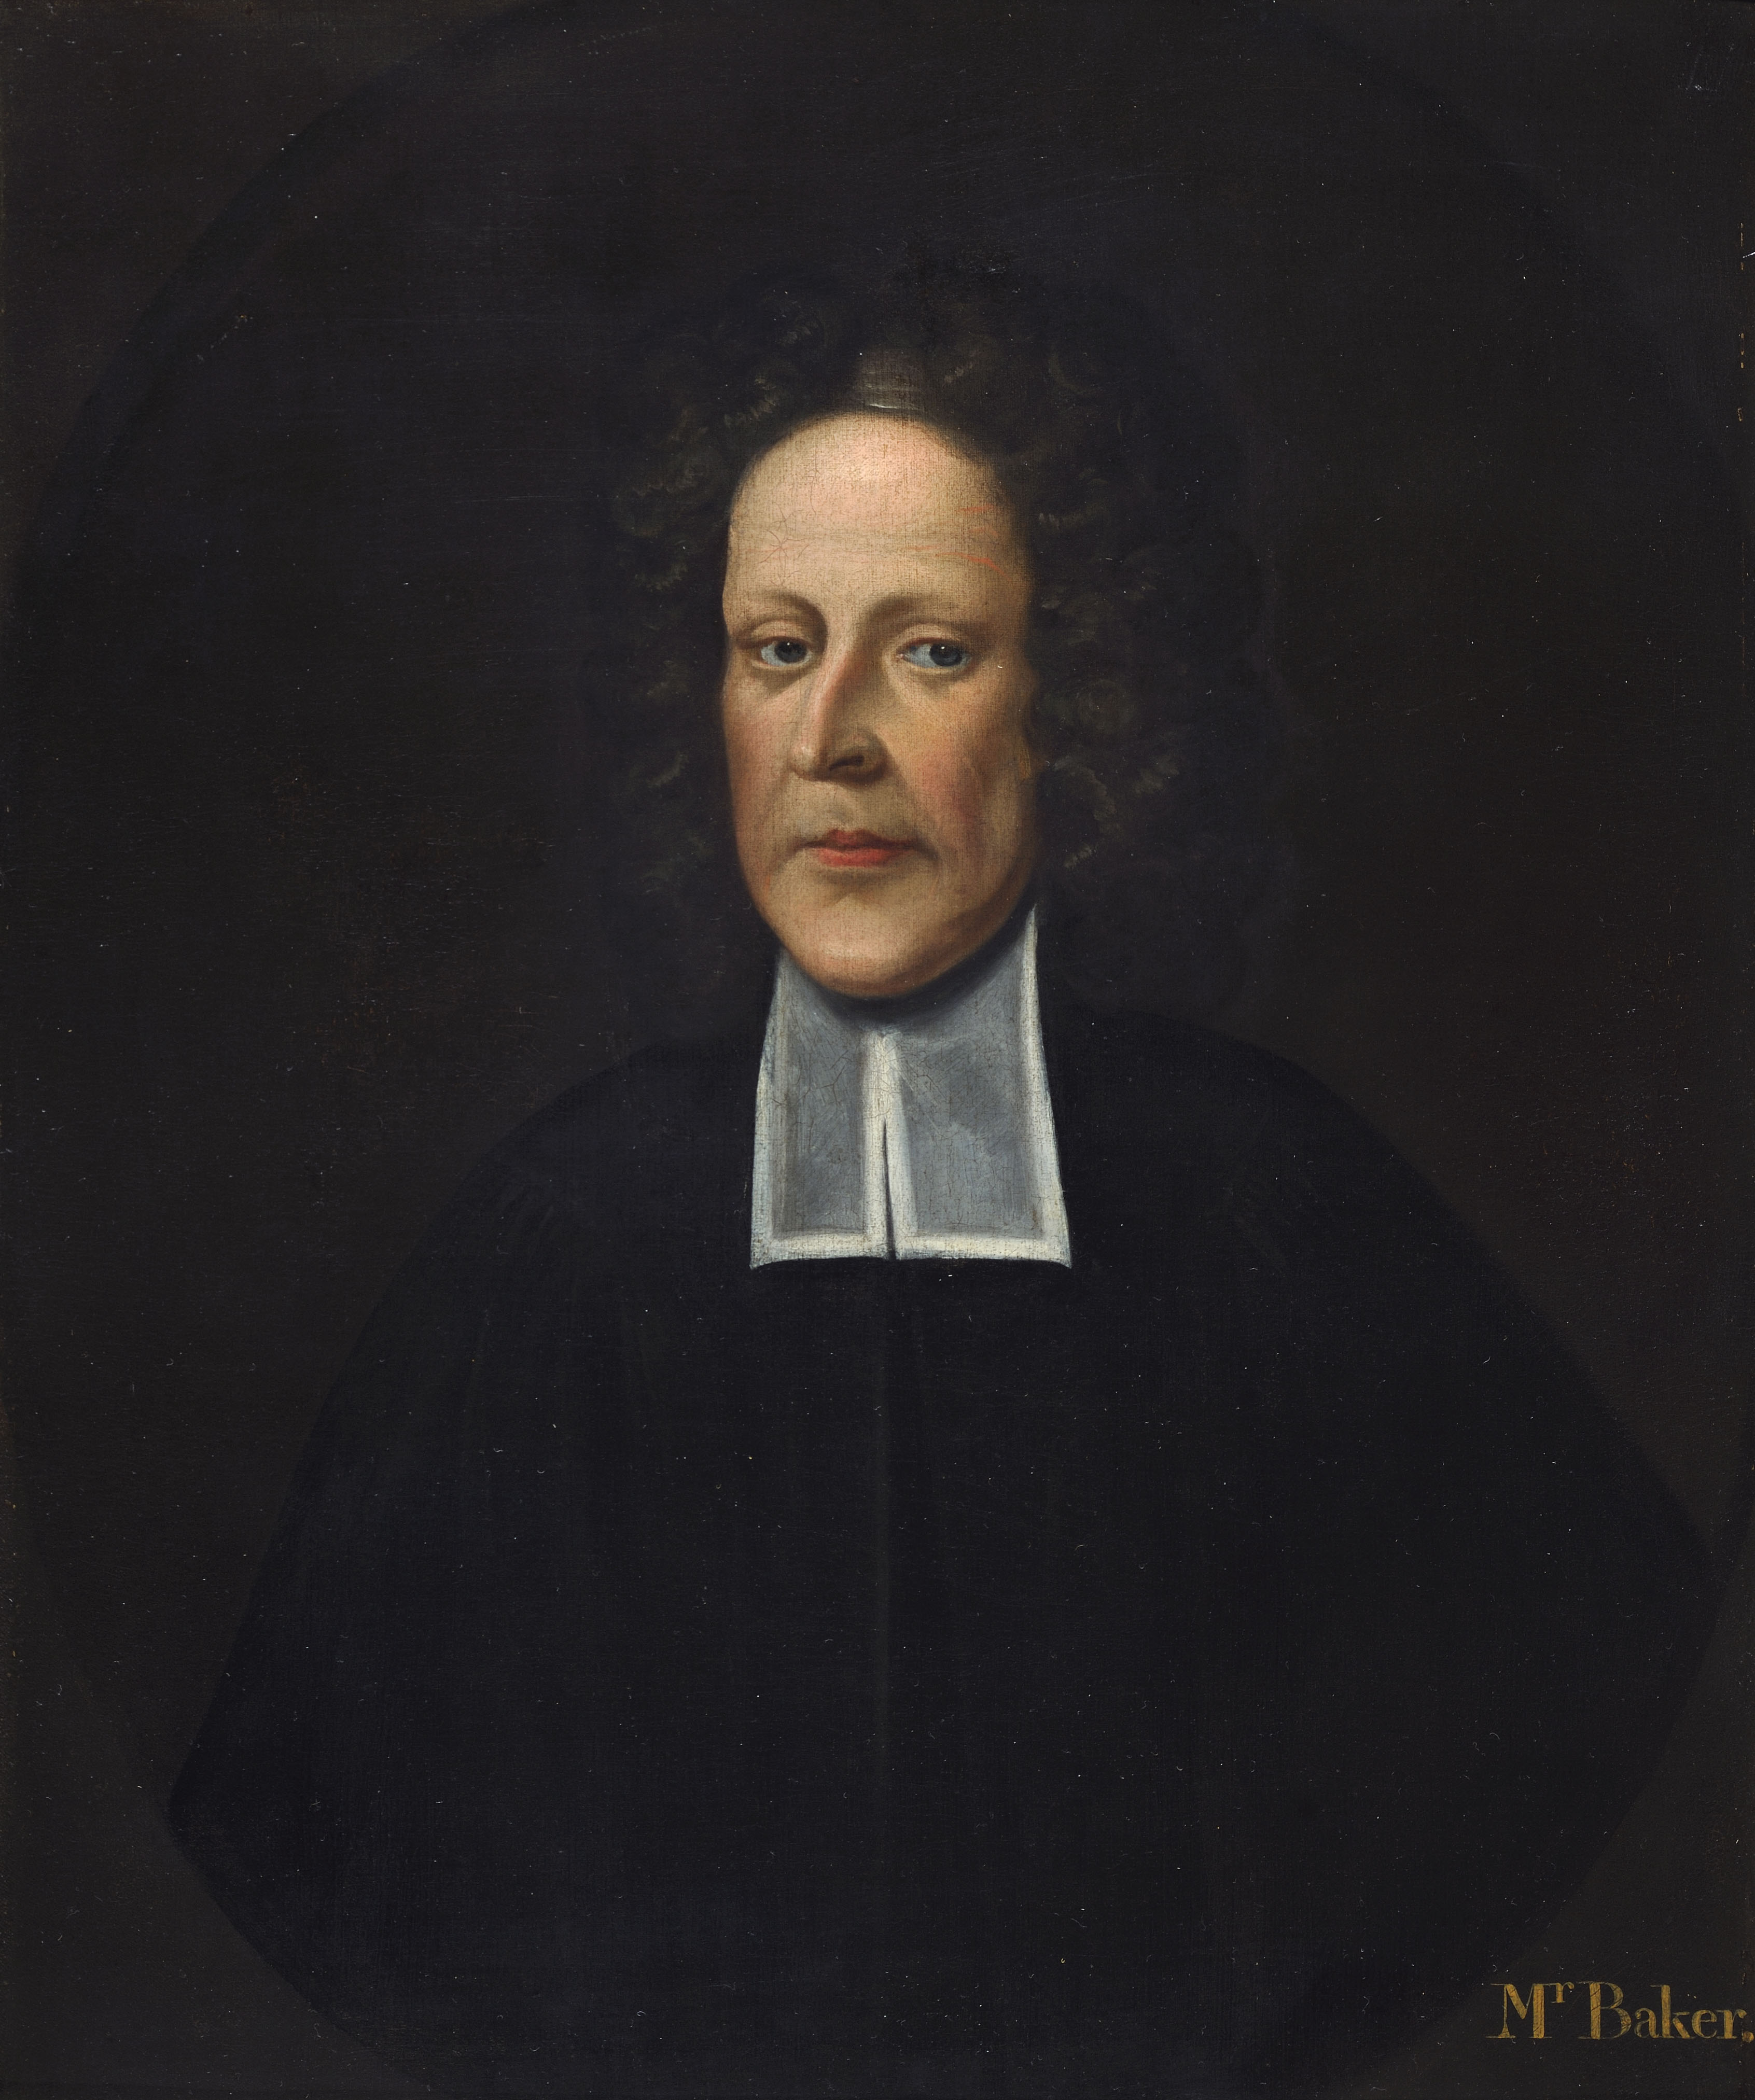 A portrait of Thomas Baker.